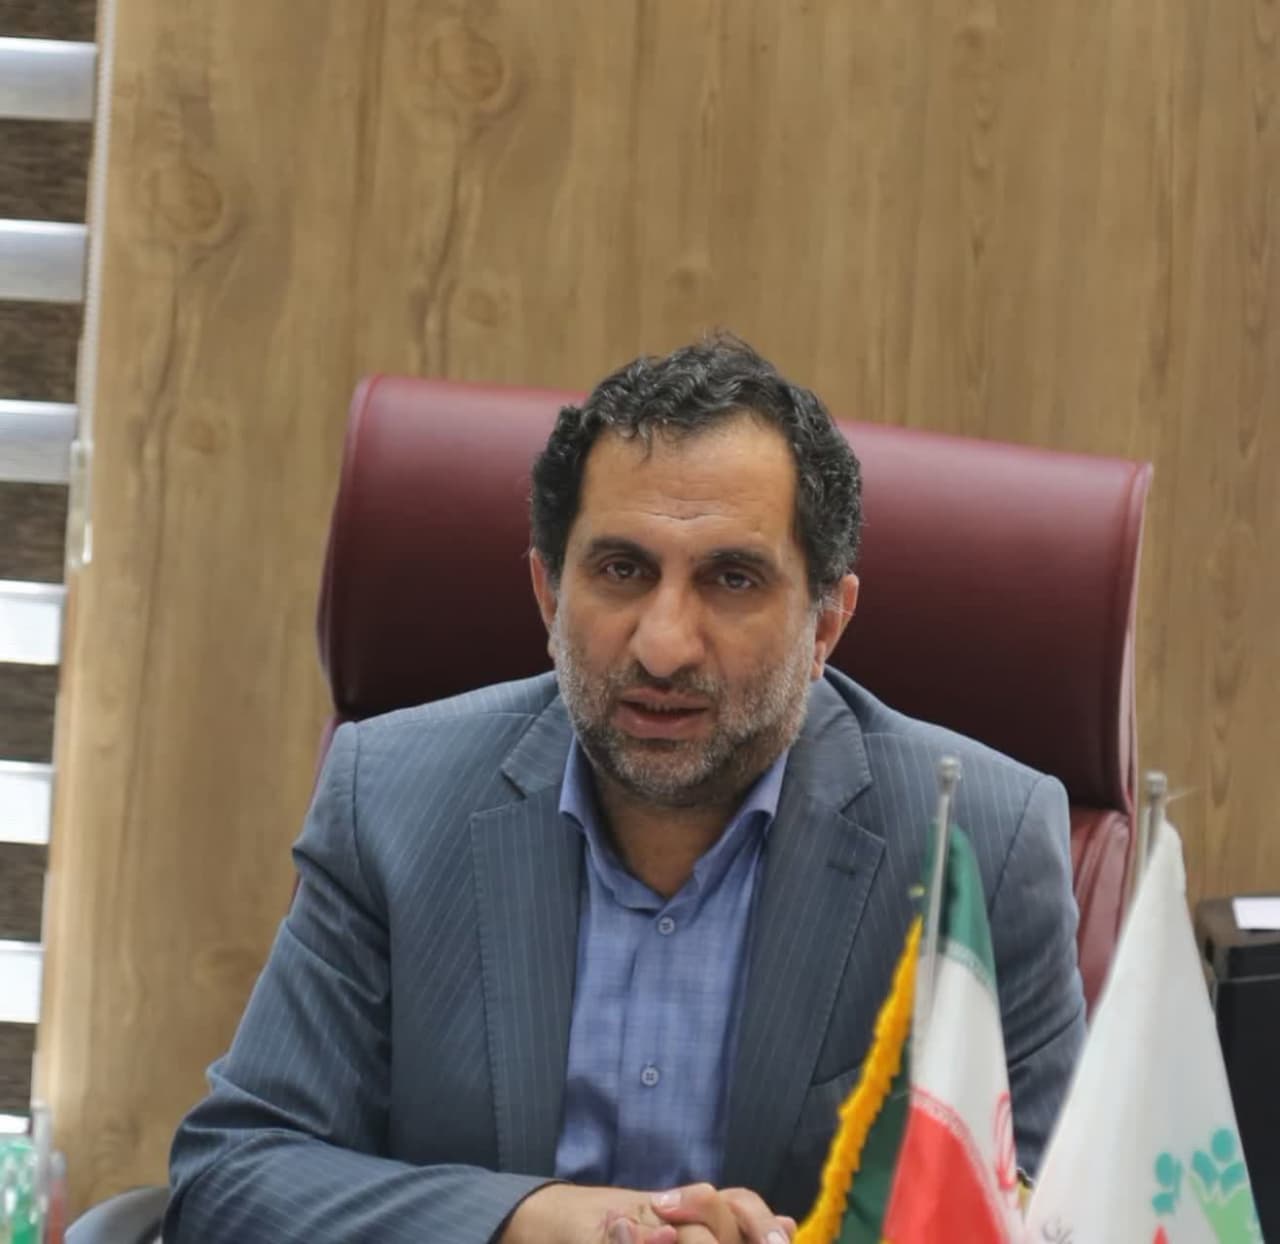 رئیس شورای شهر زنجان از مشارکت 9 میلیارد ریالی شهرداری برای اجلاس نماز خبر داد.